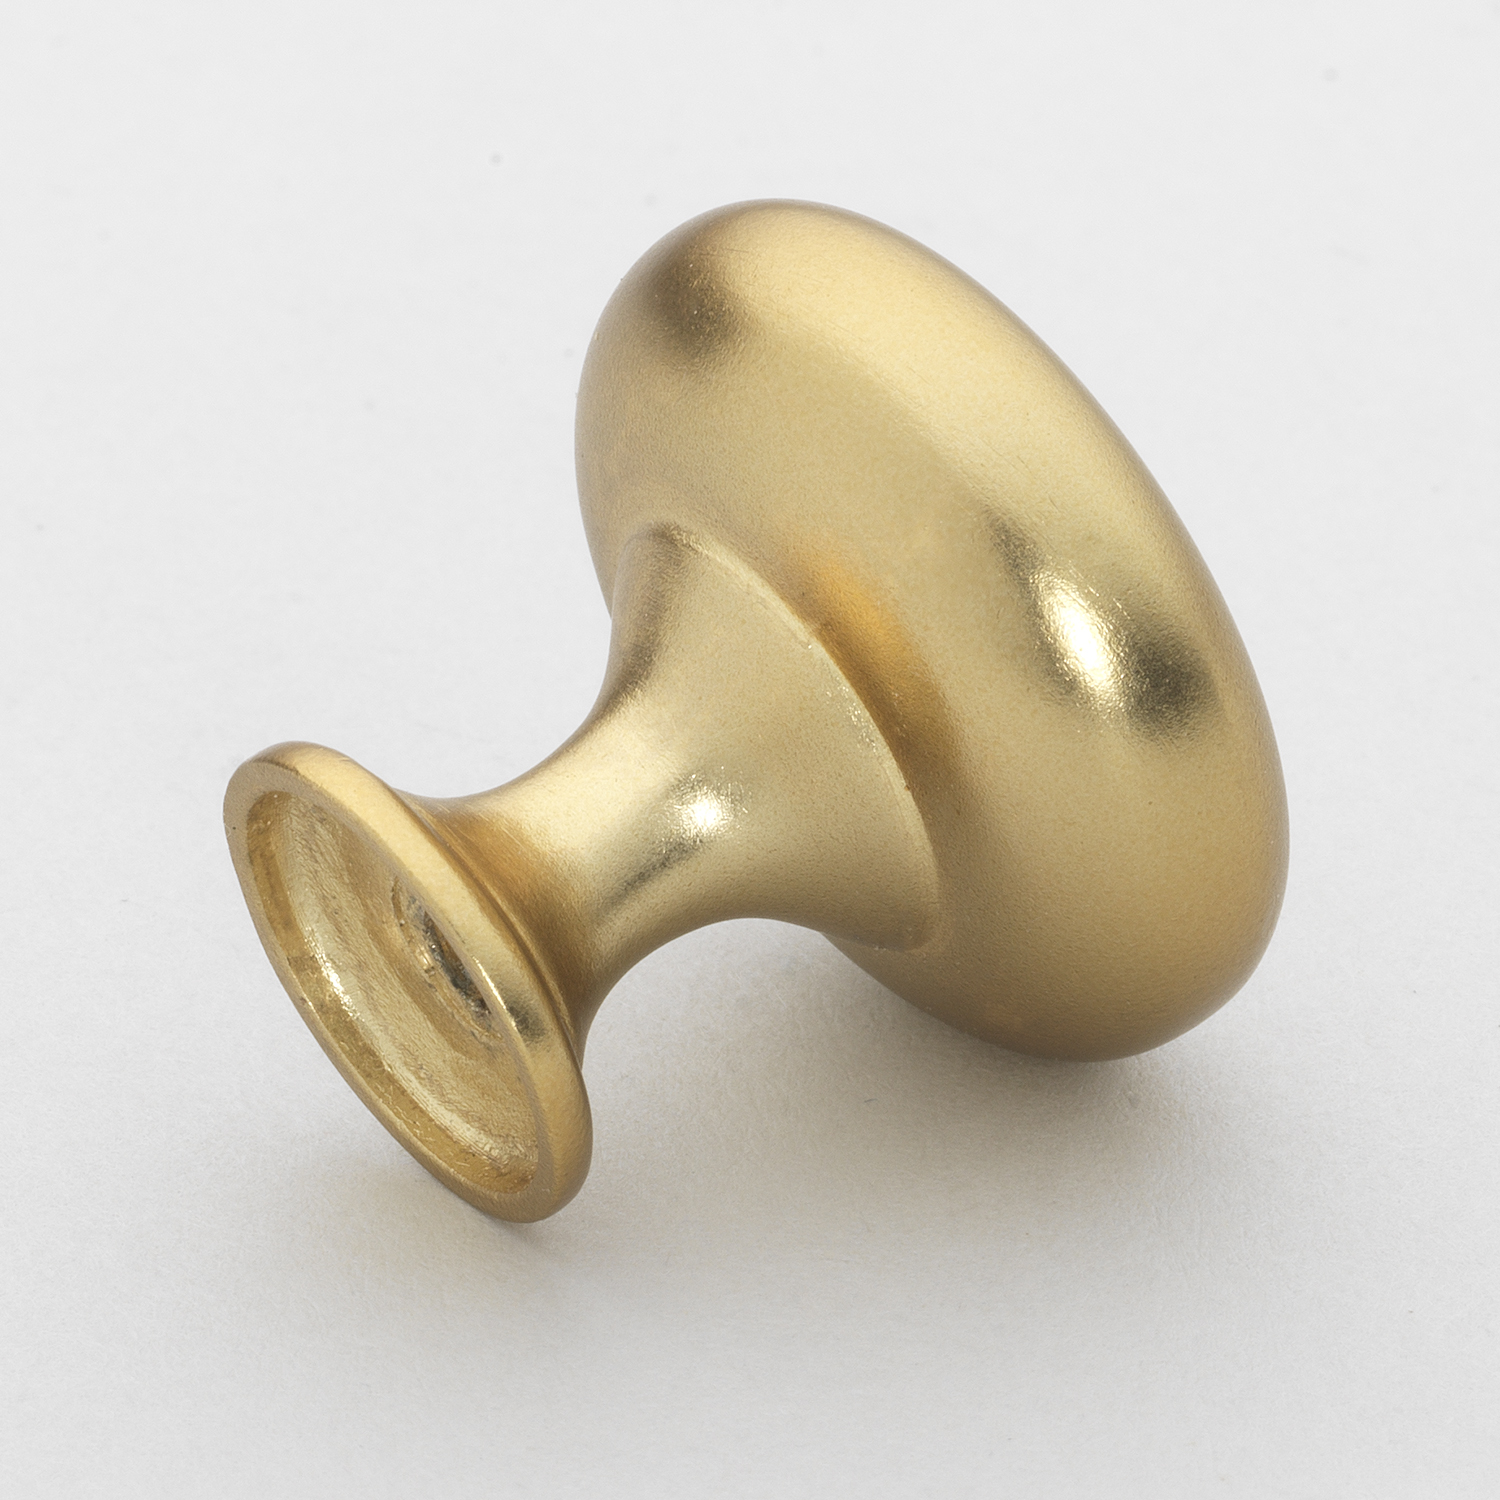 1-1/8 Inch Classic Round Solid Cabinet Knobs, Brass Gold - 5411-BG -  GlideRite Hardware